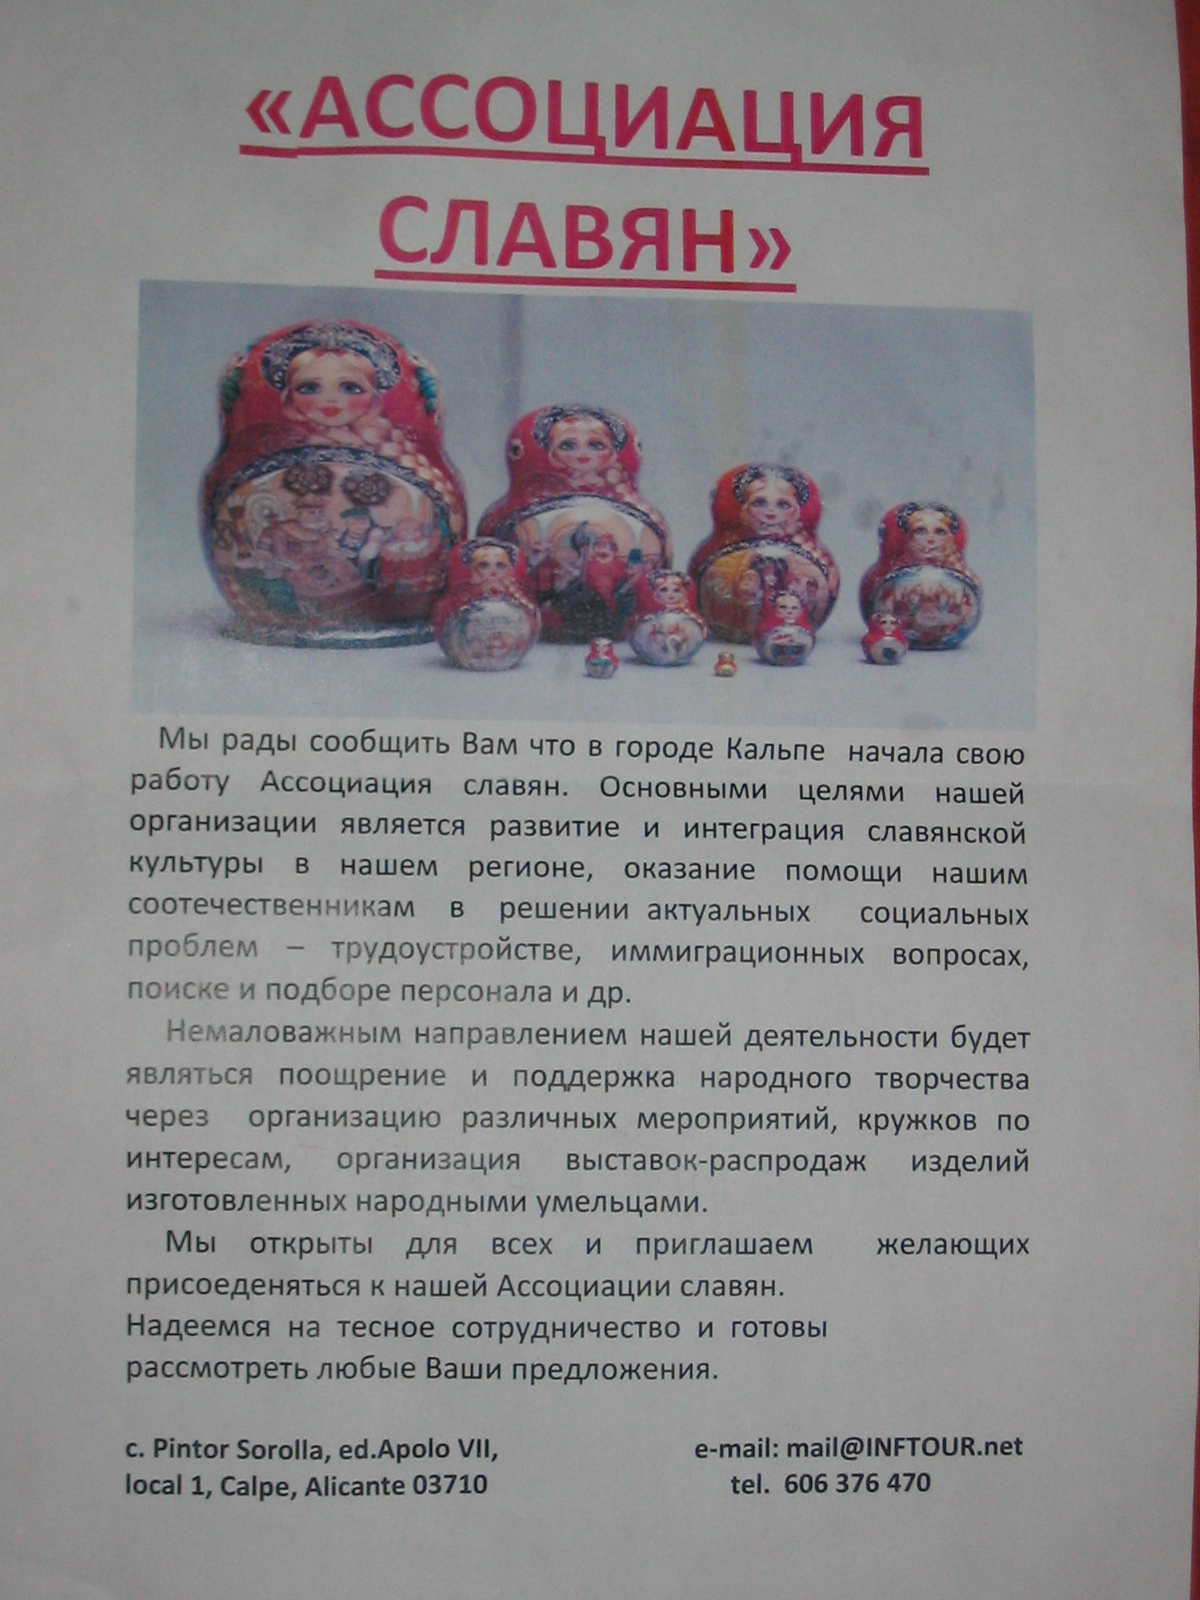 Asociación de eslavos